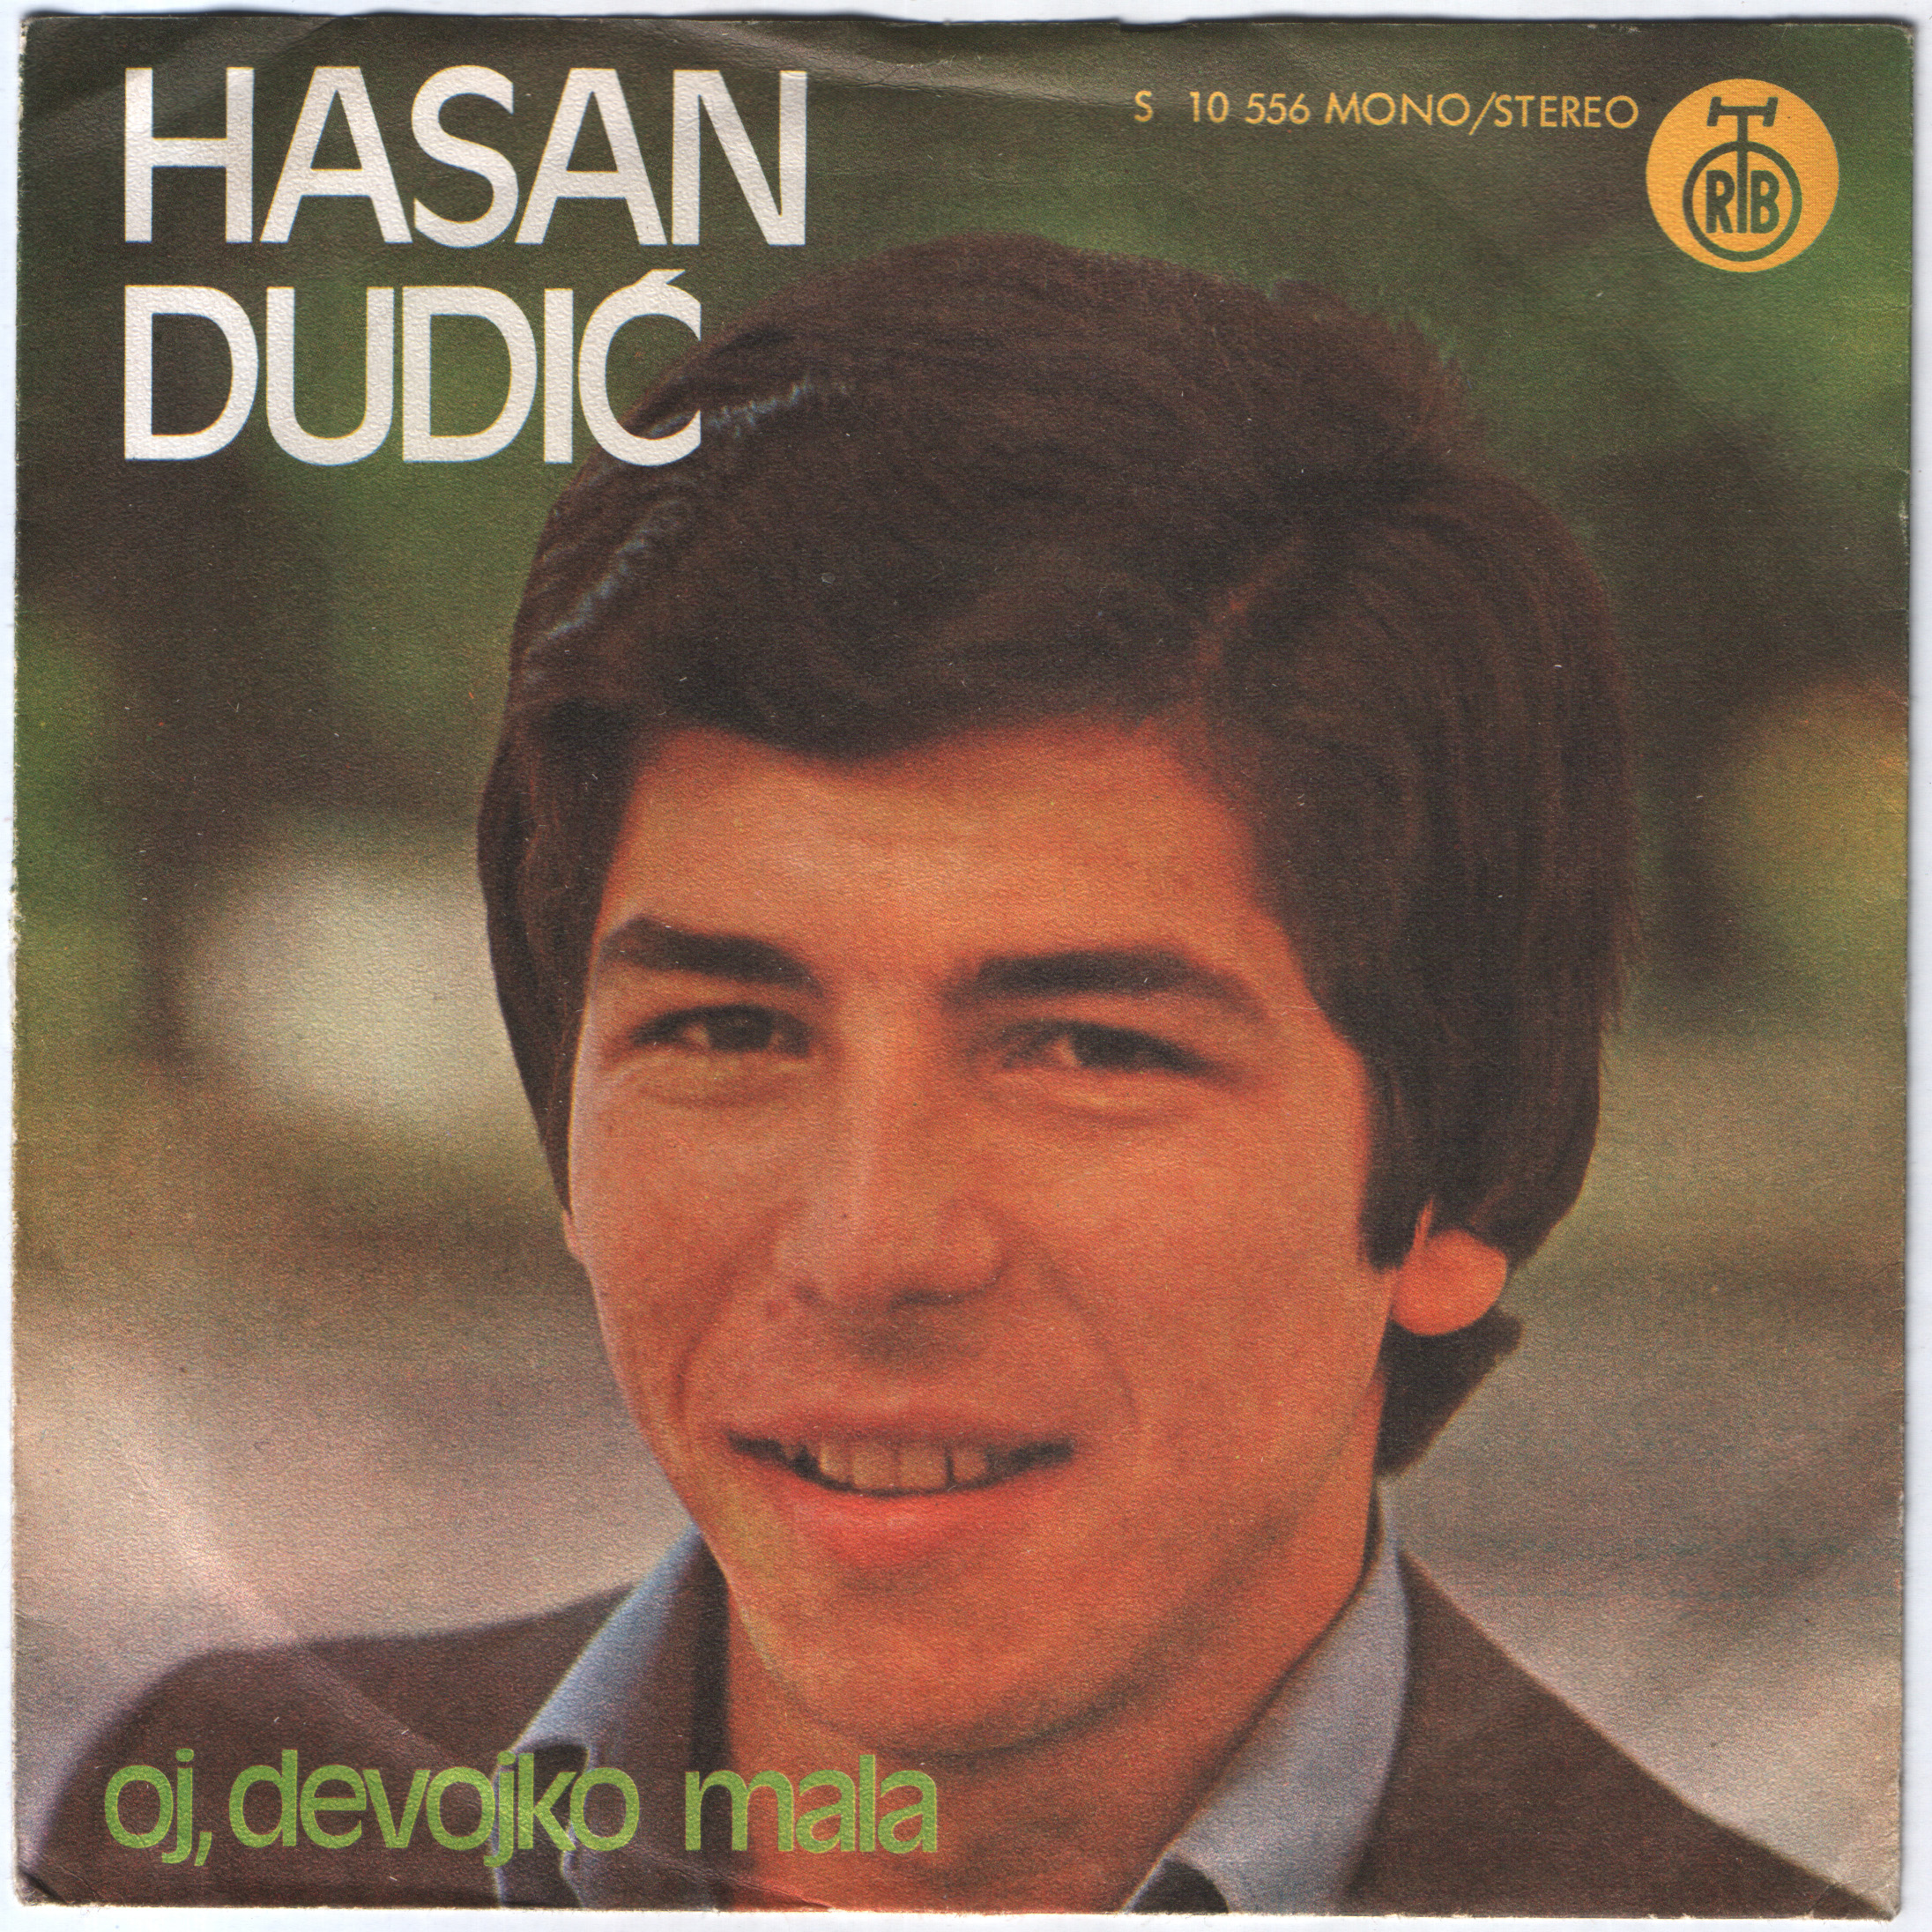 Hasan Dudic 1977 P